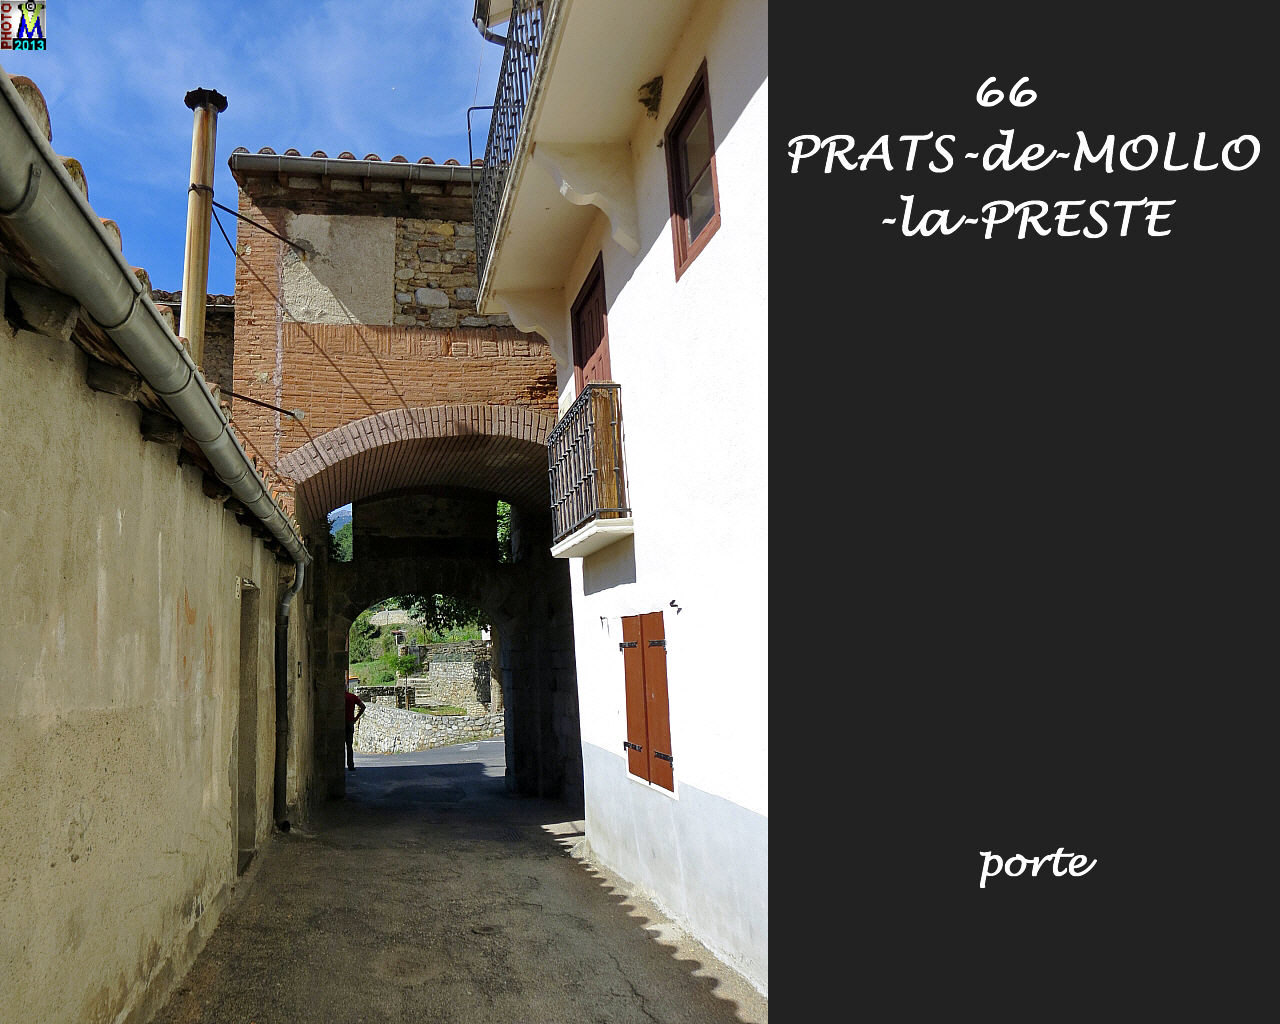 66PRATS-MOLLO-PRESTE_porte_102.jpg